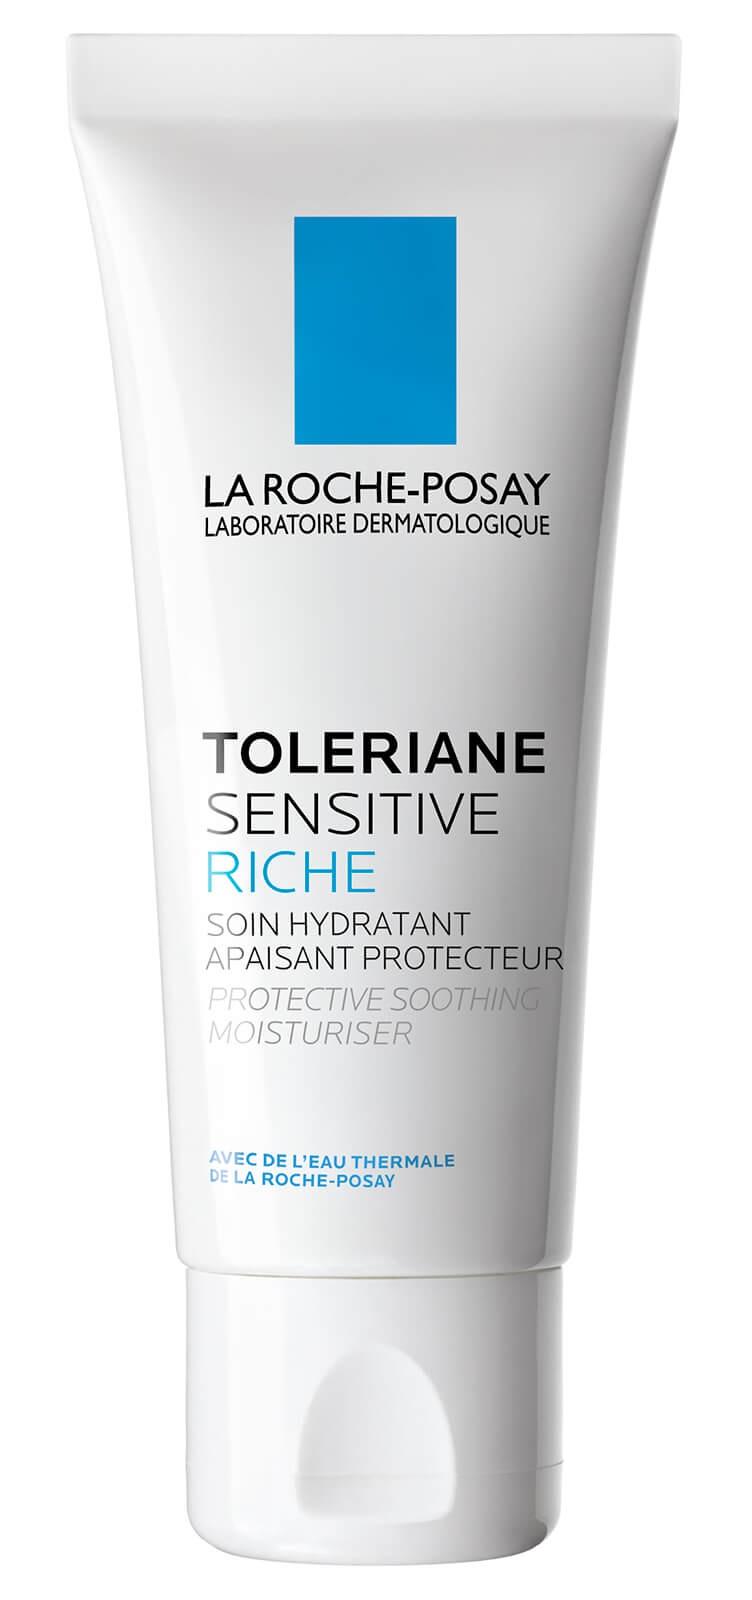 La Roche-Posay Toleriane Sensitive Riche